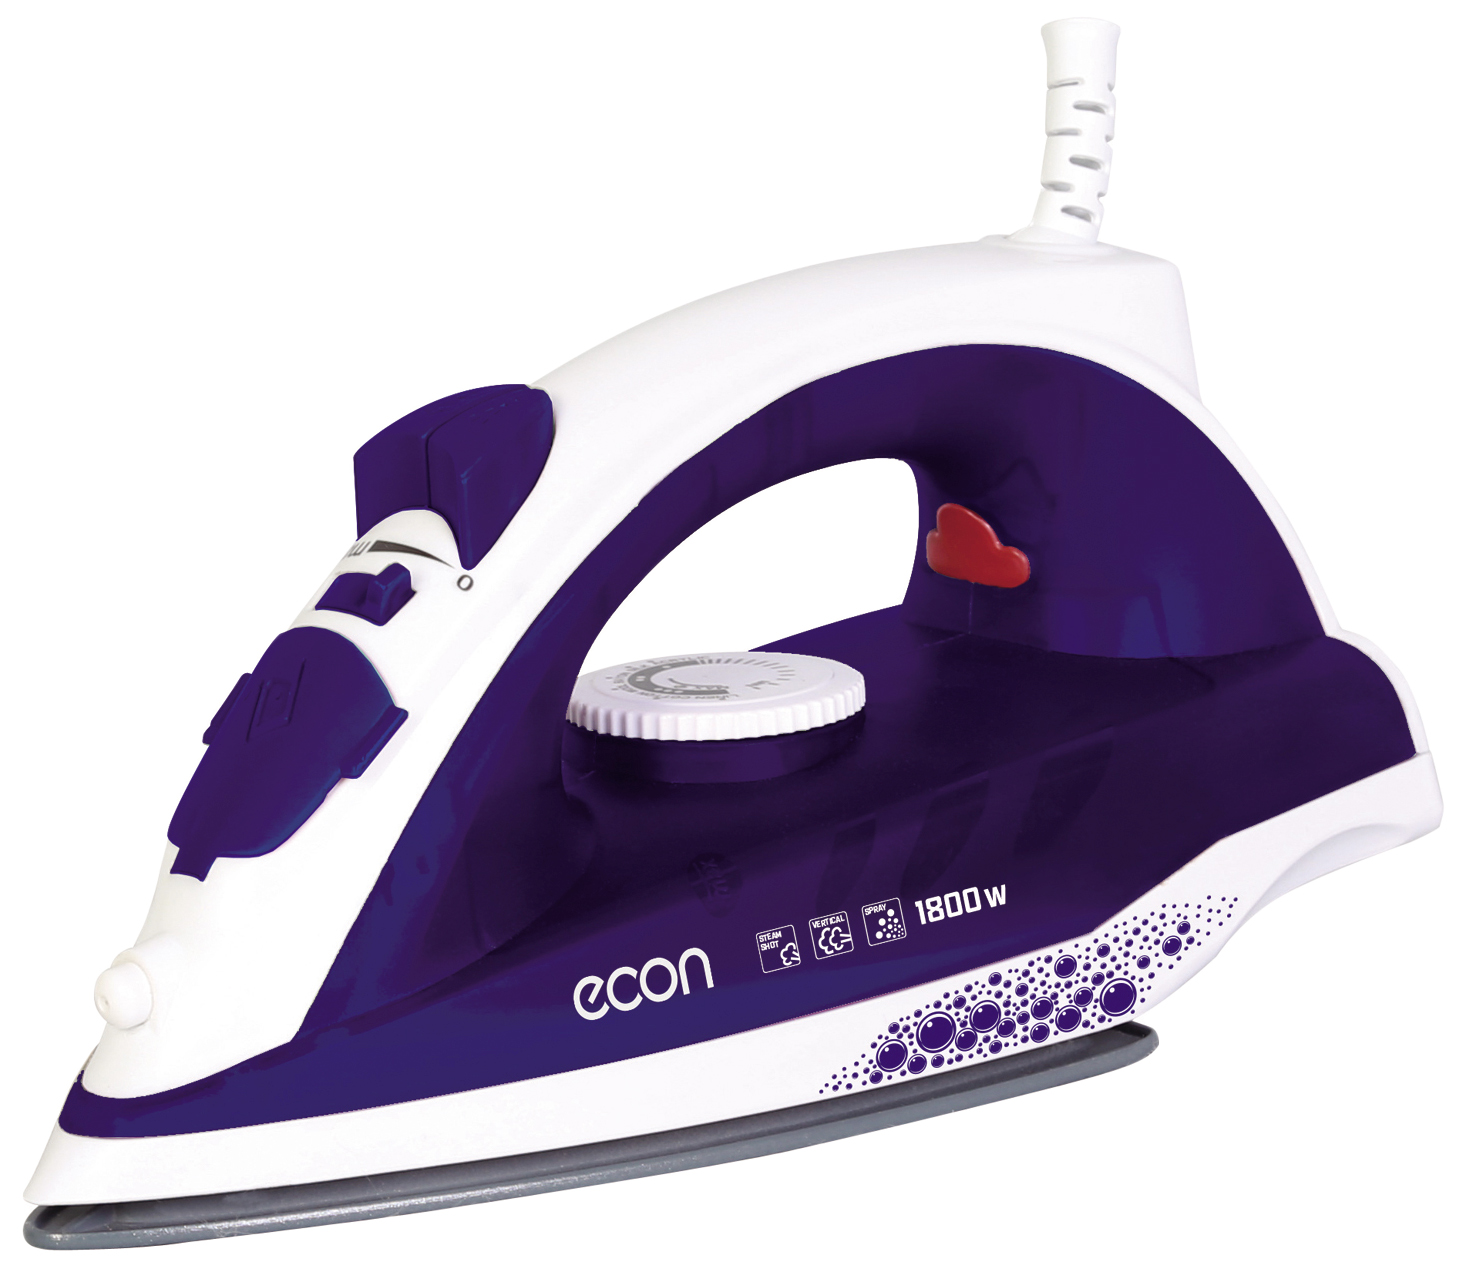 Утюг ECON ECO-BI1801 White/Purple утюг hyundai h si01961 white purple